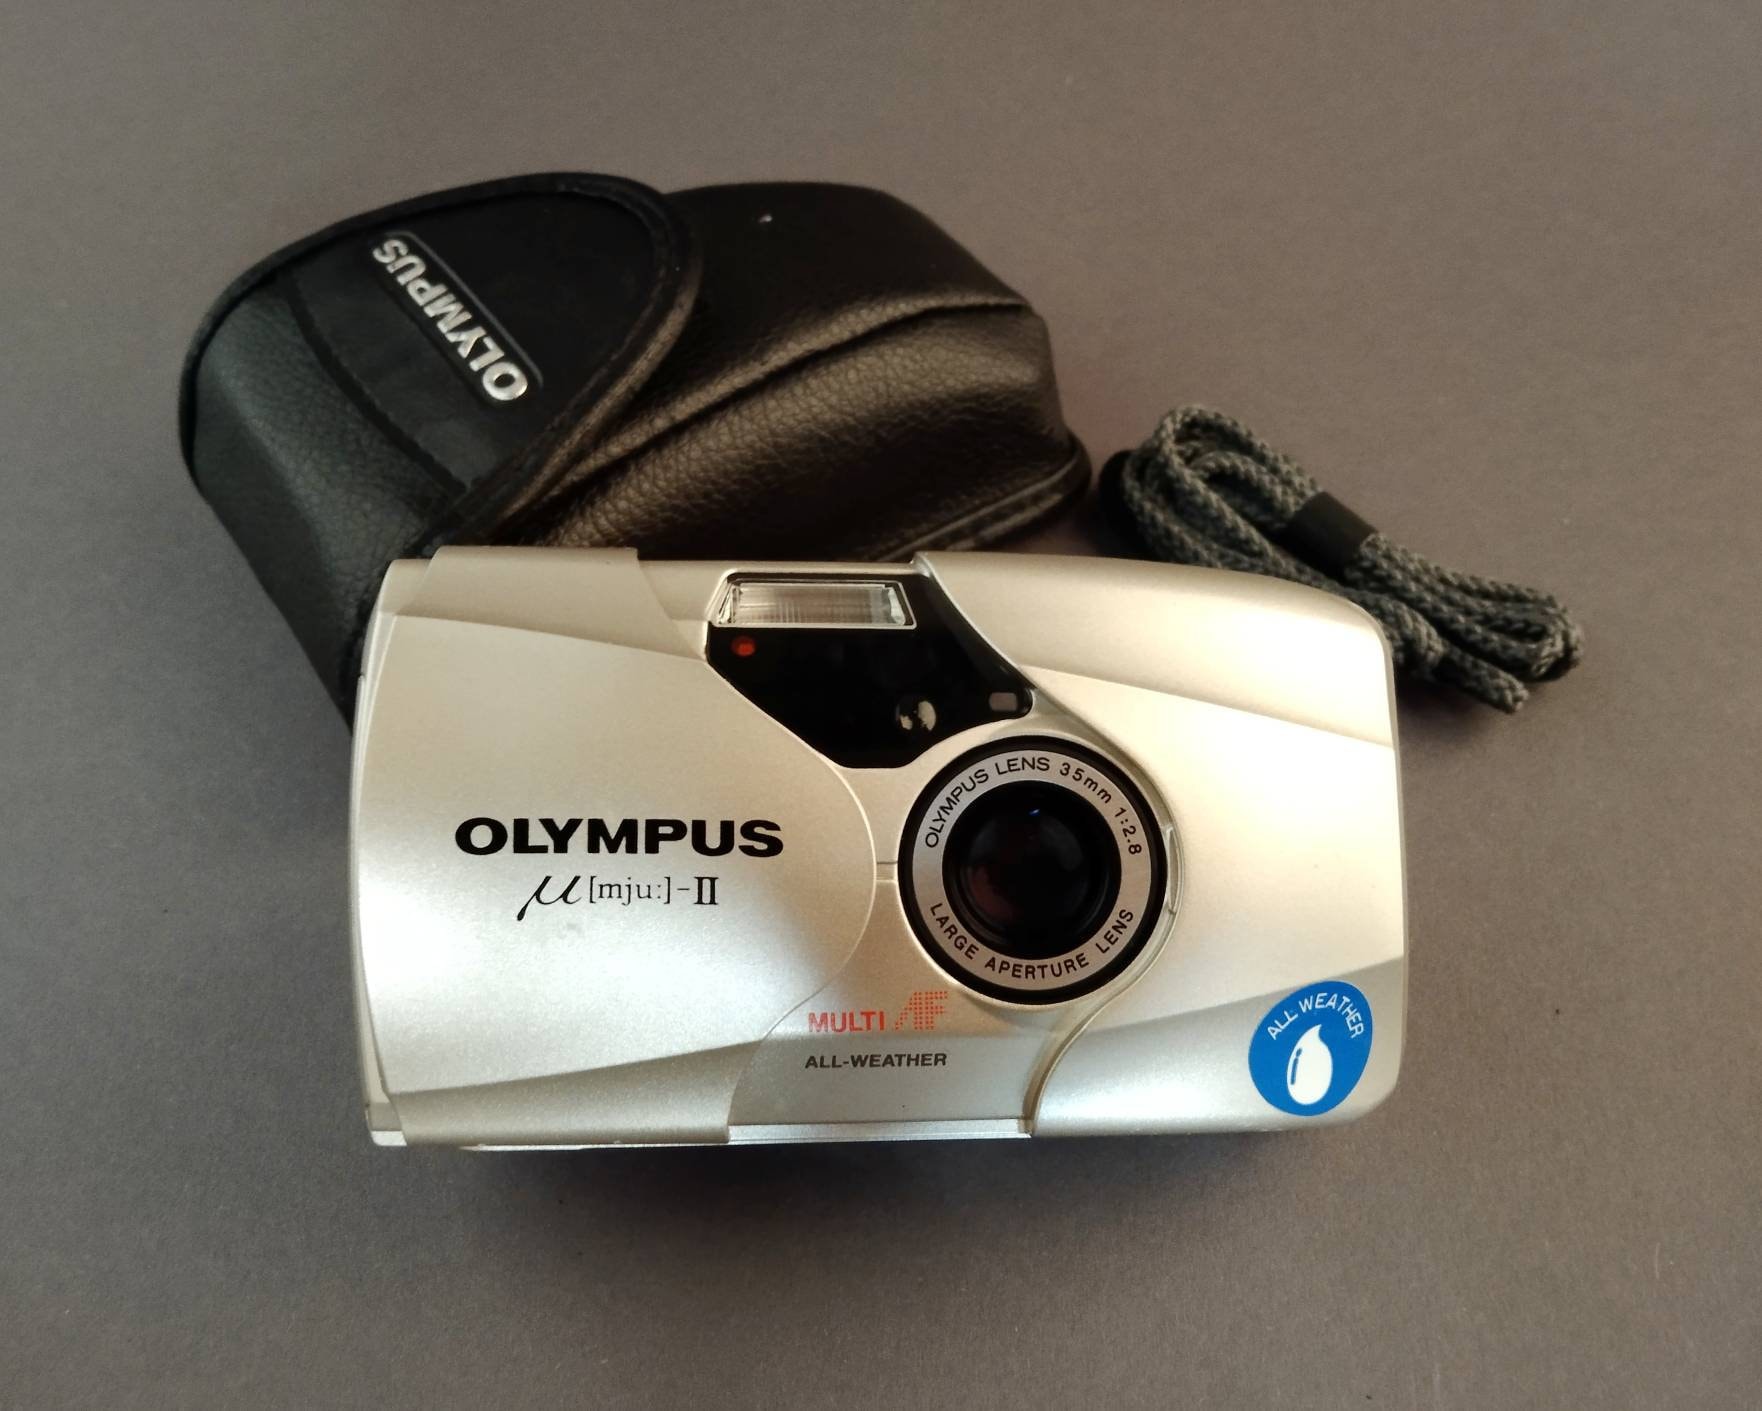 Eekhoorn opwinding Beschikbaar Olympus MJU II 2.8 Point and Shoot Film Camera With Original - Etsy